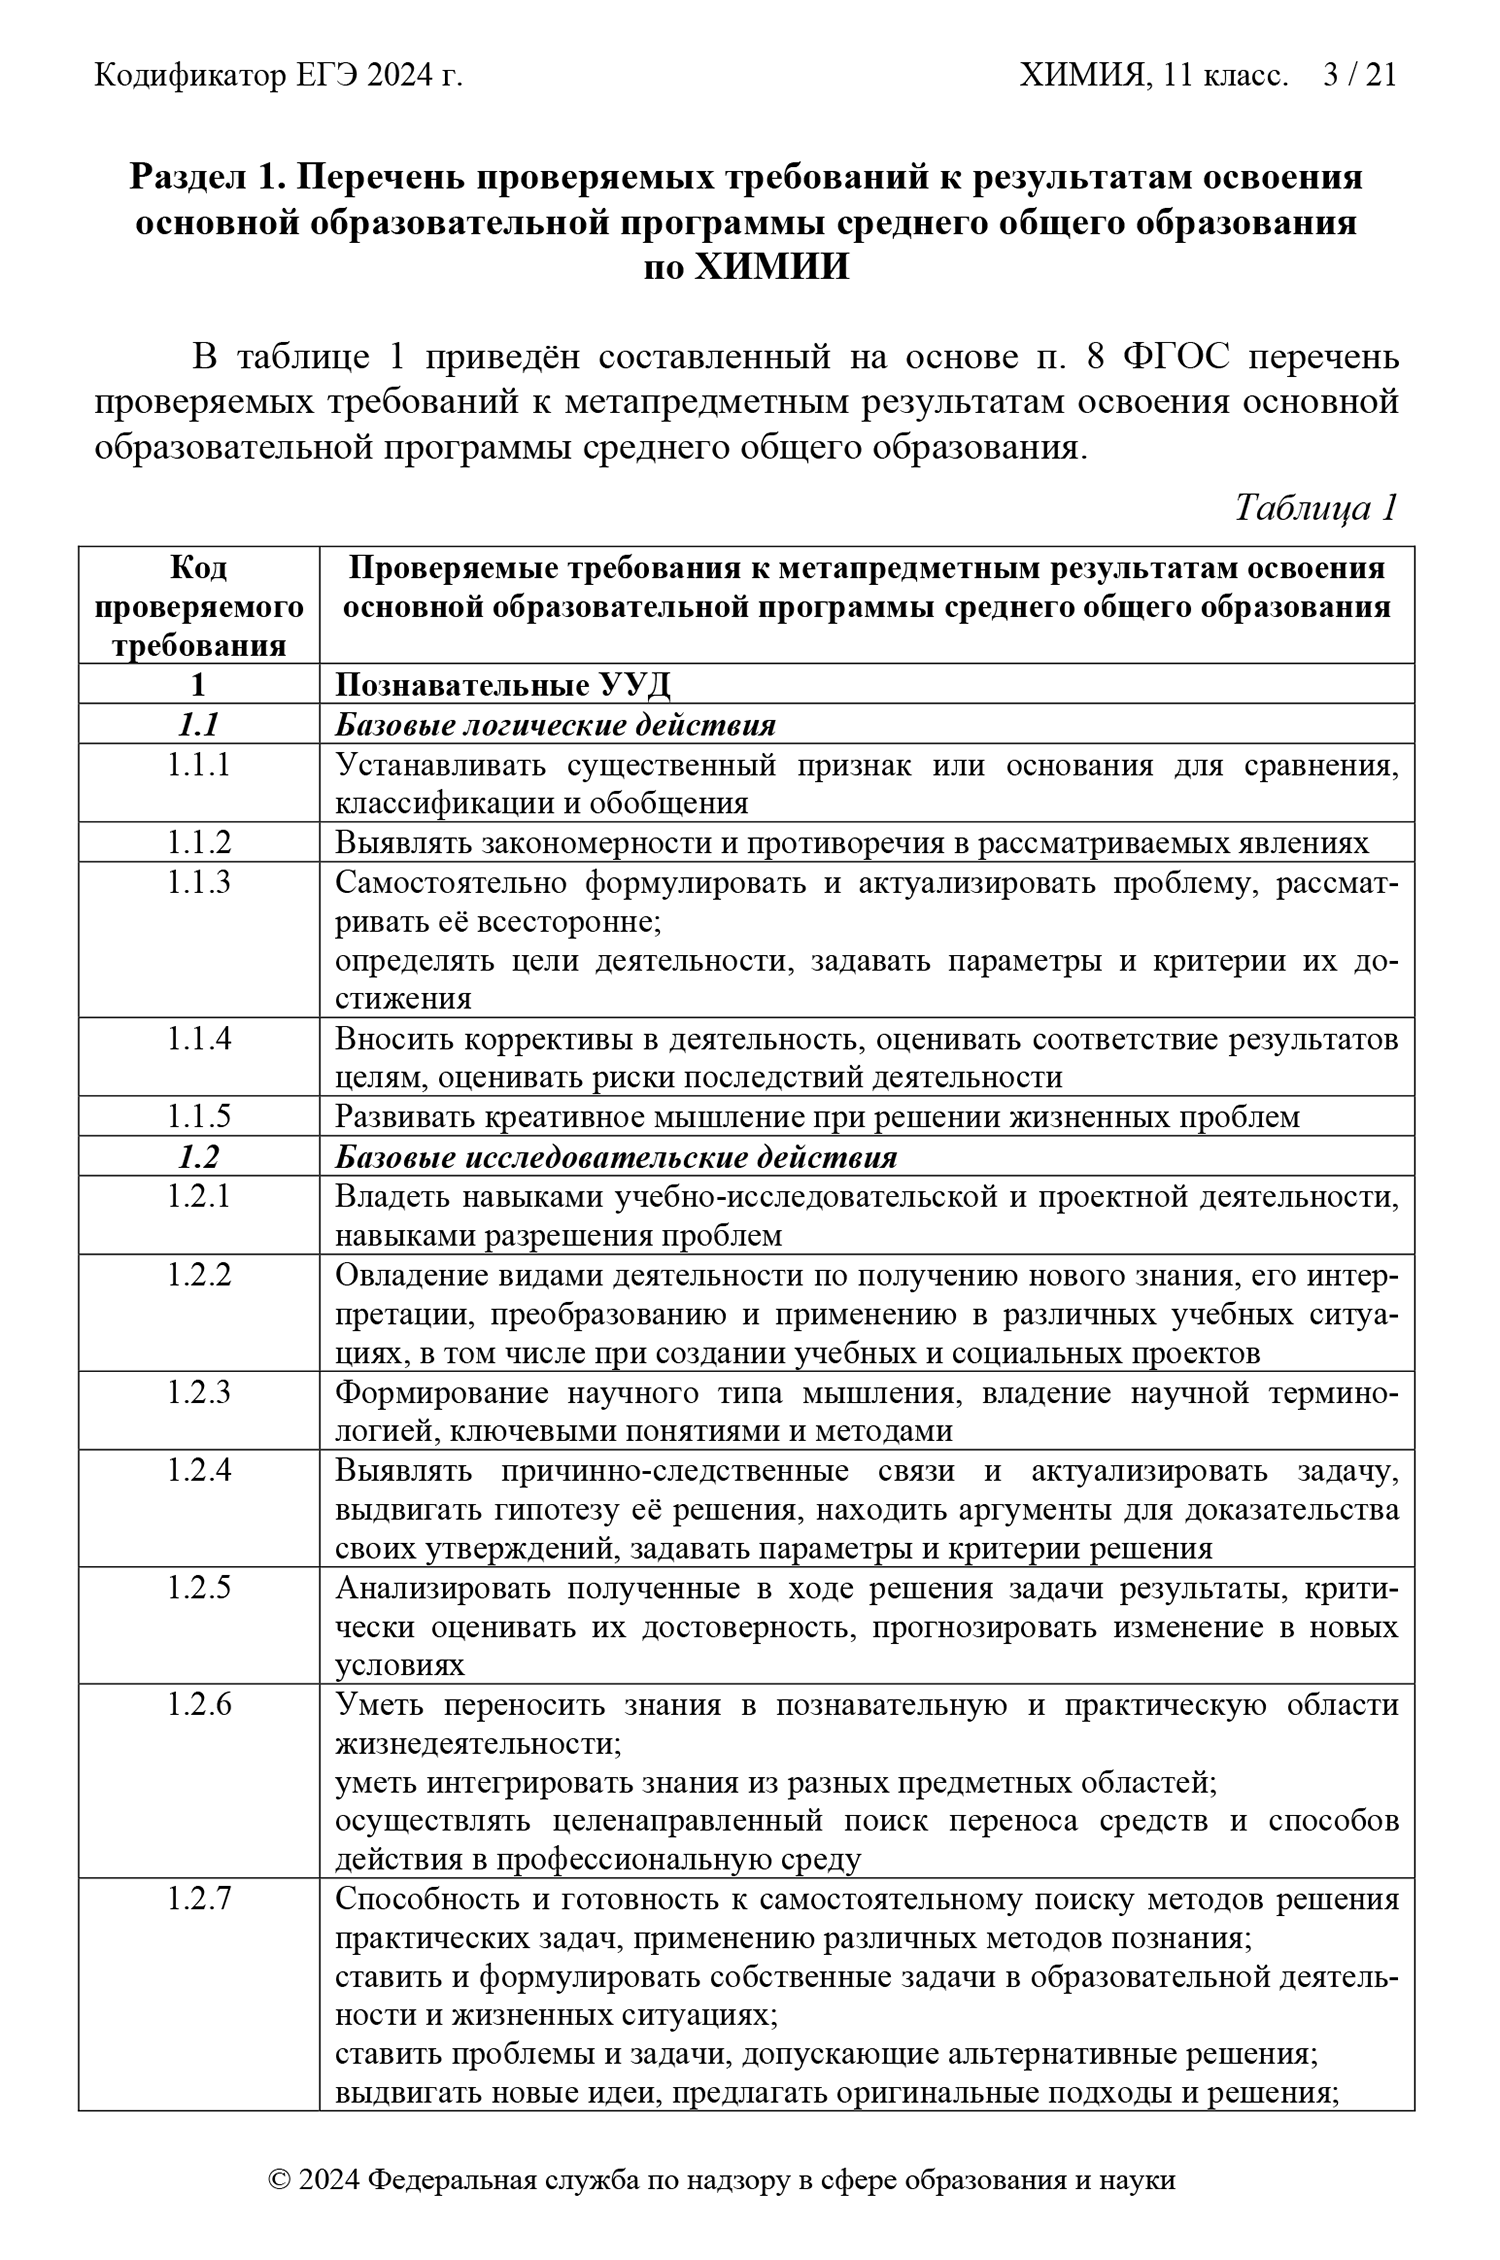 Список тем для подготовки к ЕГЭ по химии. Источник: fipi.ru